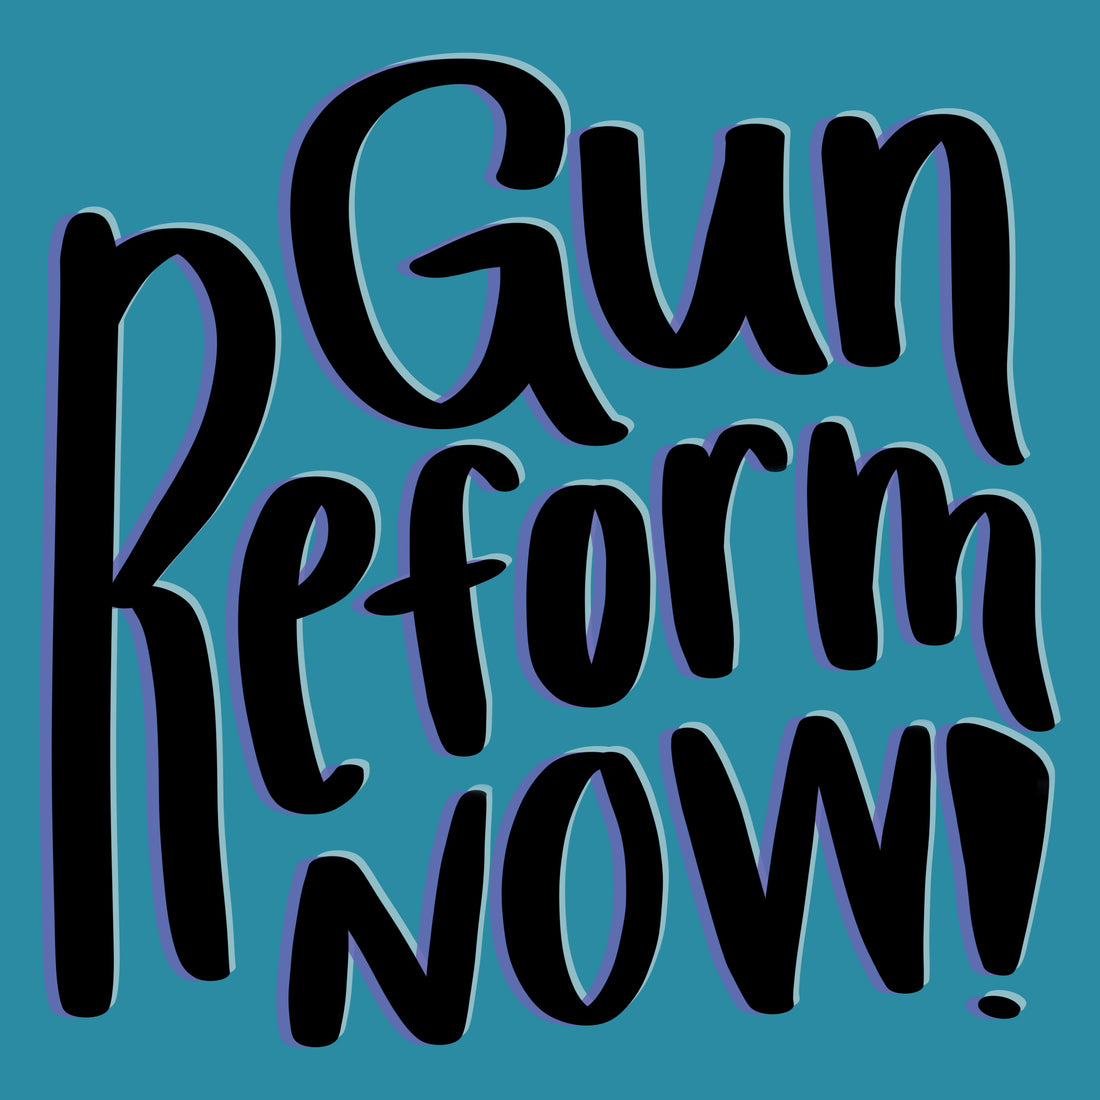 Gun Reform